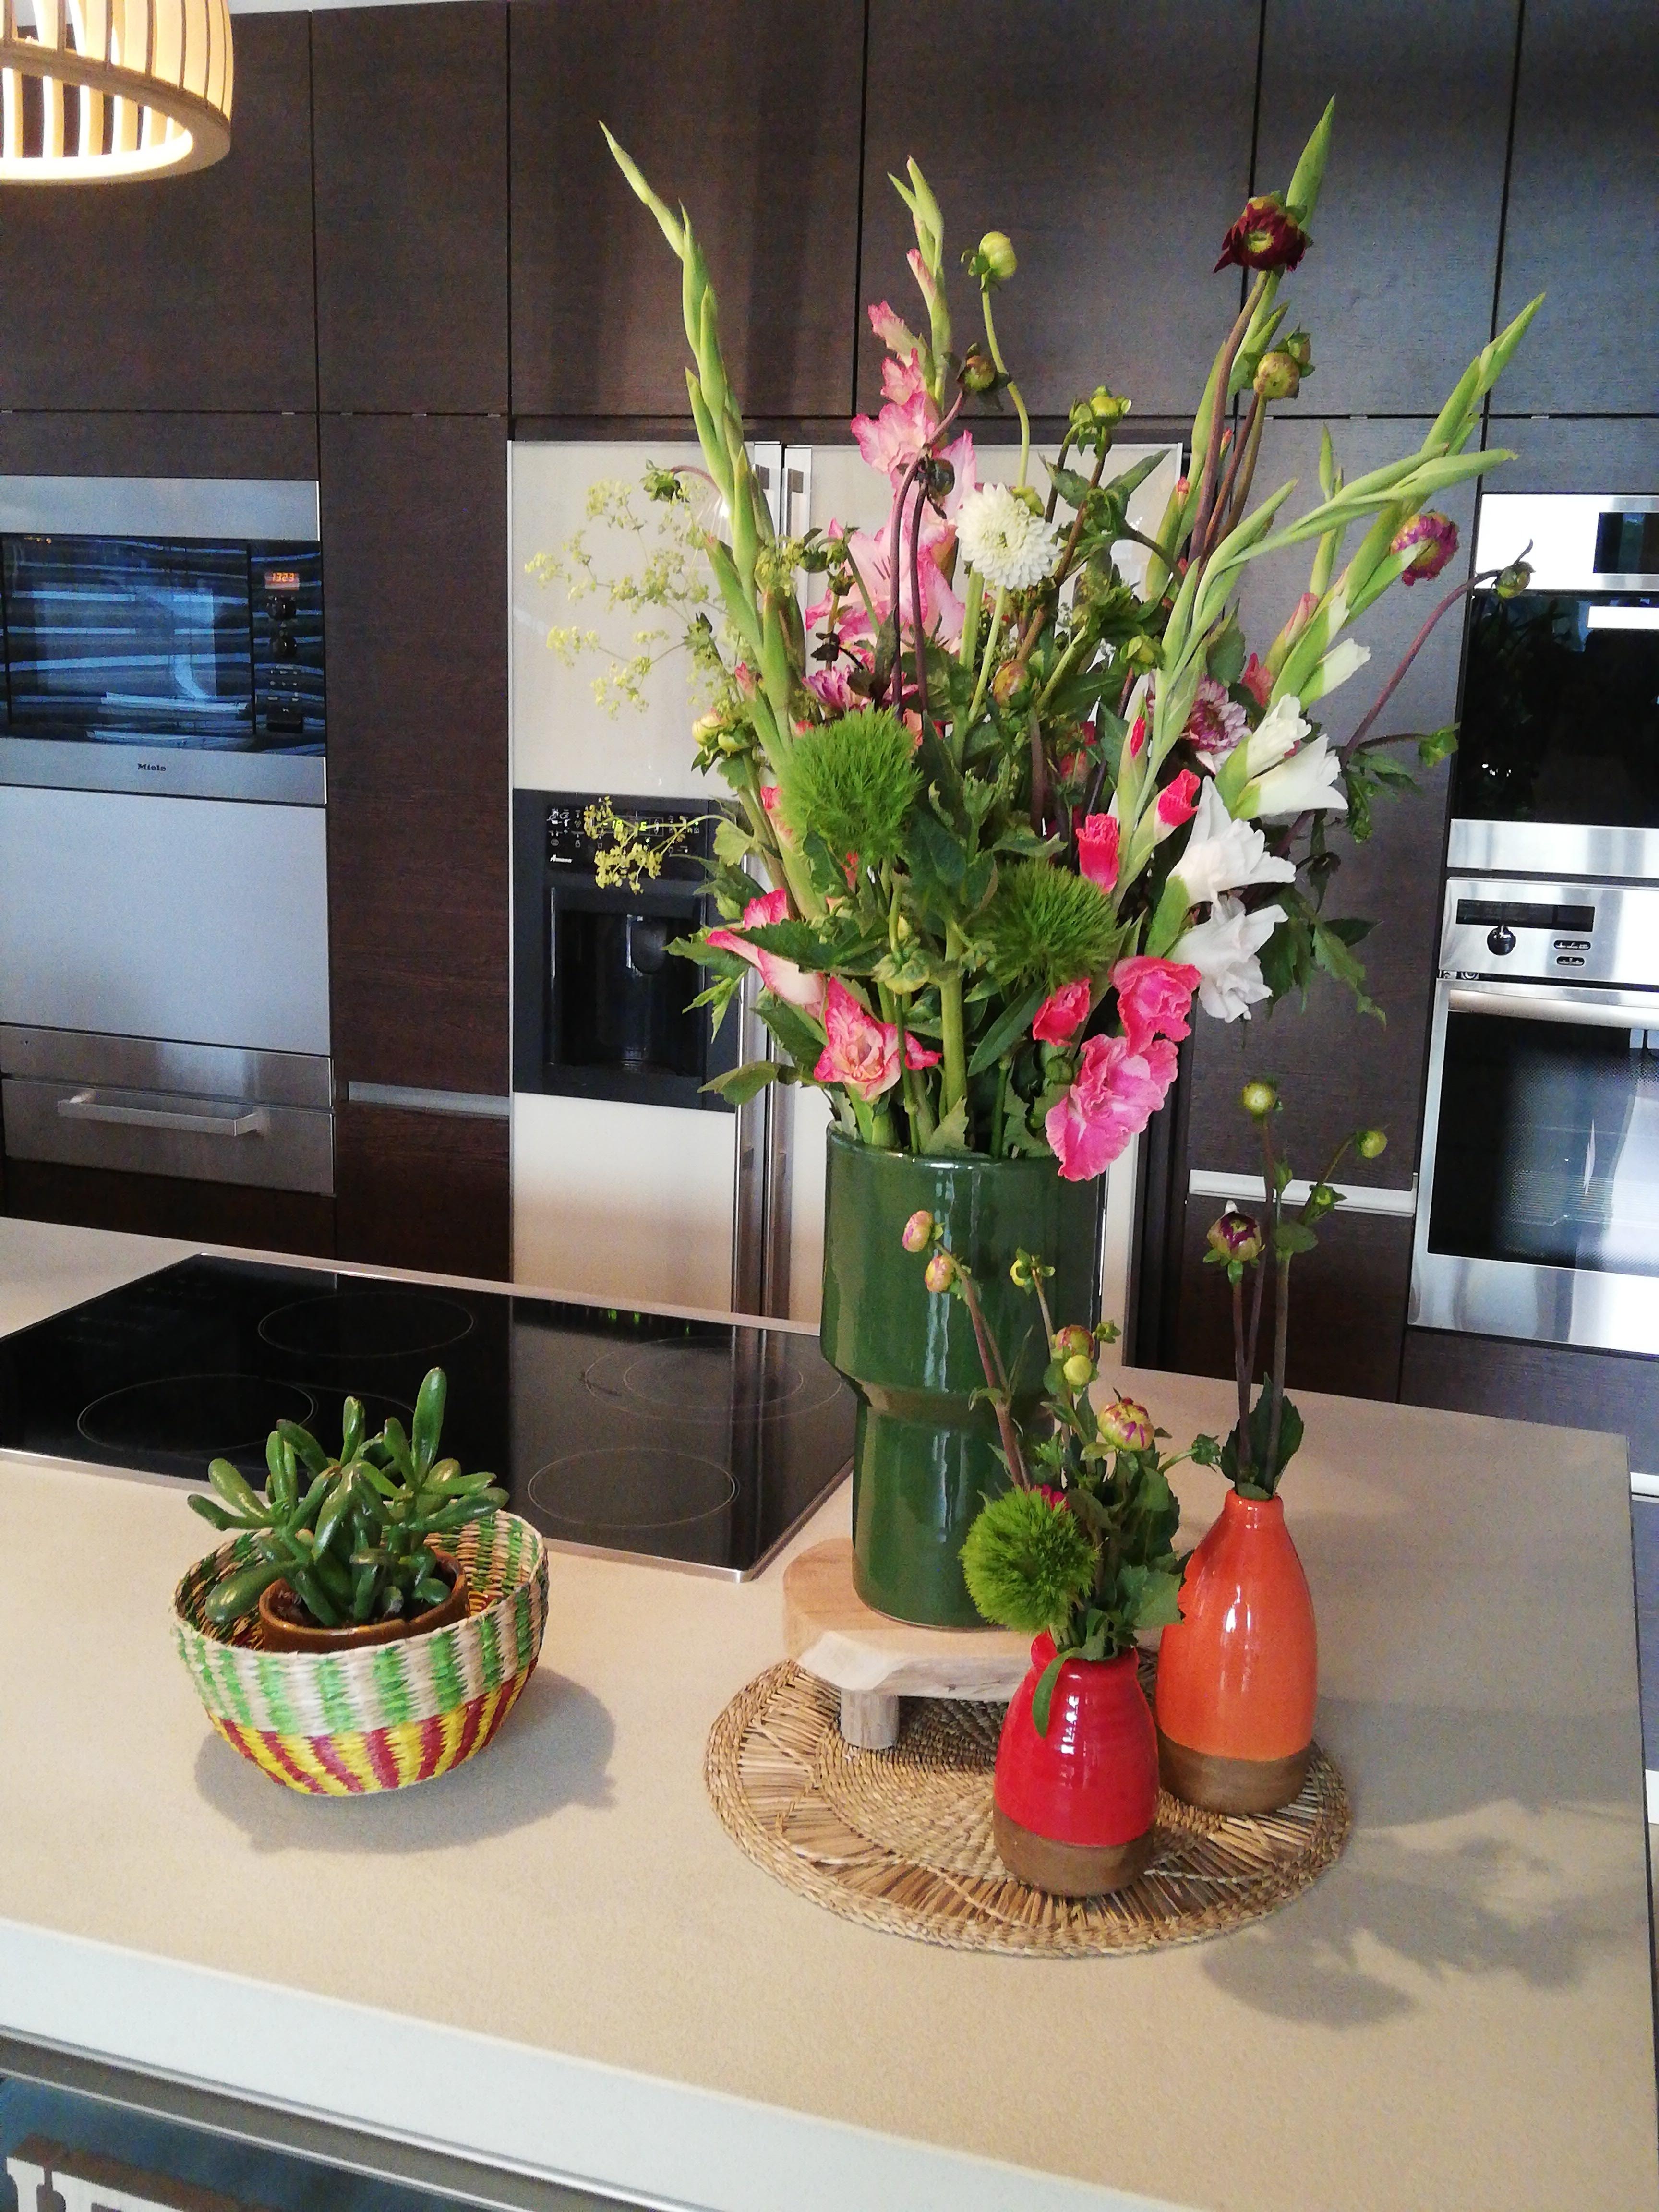 #kitchenlove #flowers #flowerlovers #diy #selbstgepflückt #selbstgemacht #zarahome #decor #decoration  #home #blumendeko